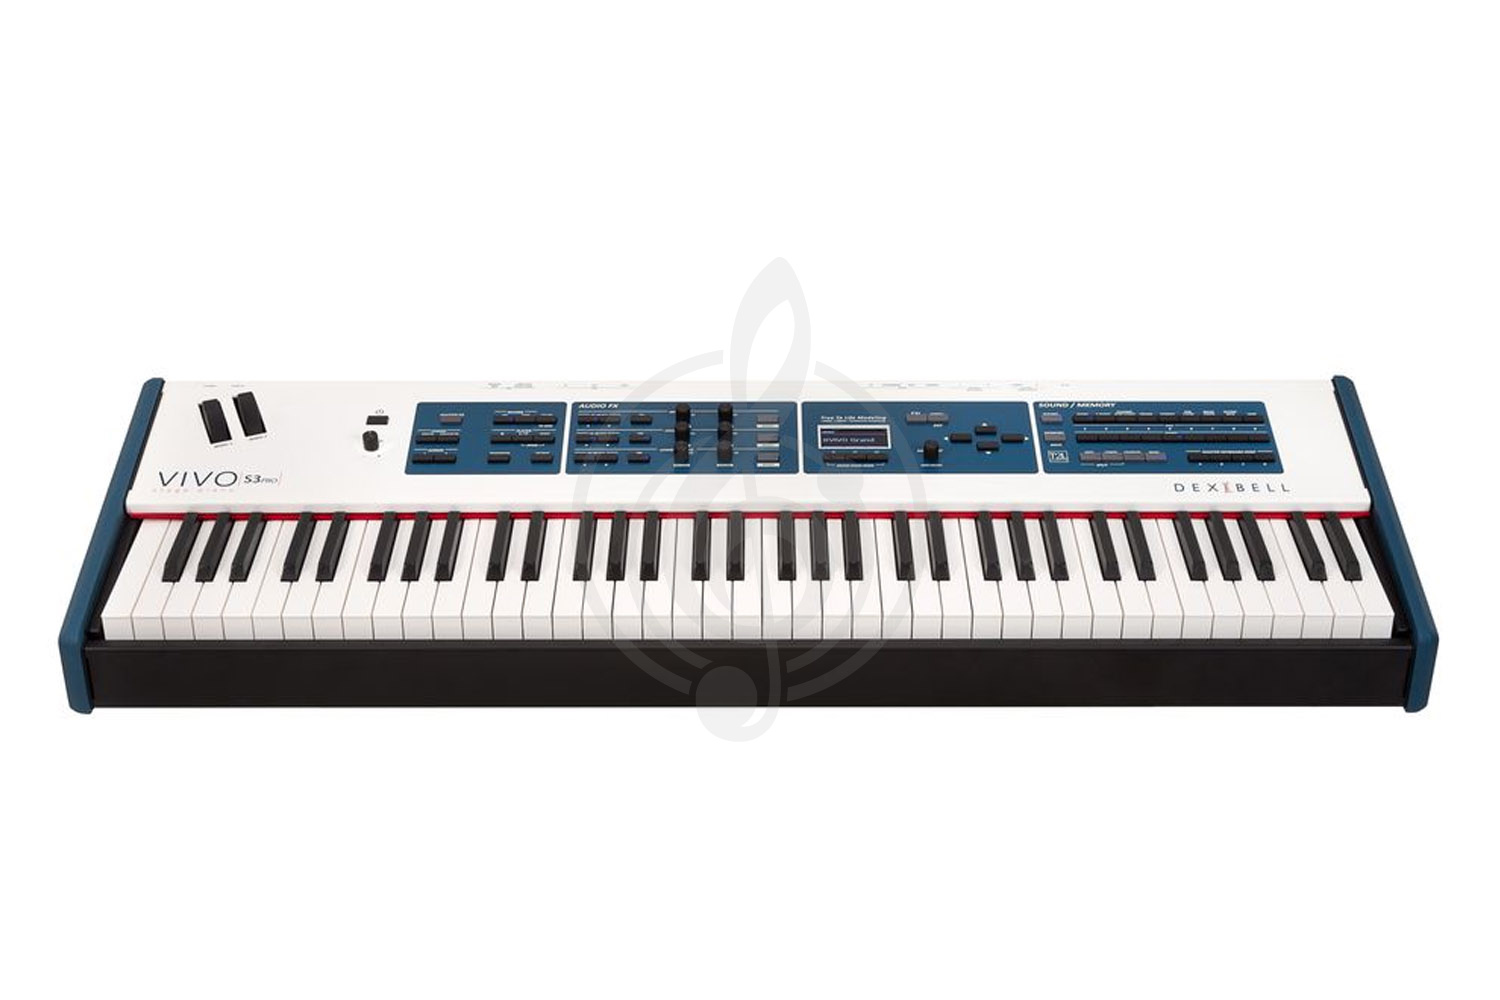 Цифровое пианино Цифровые пианино DEXIBELL Dexibell VIVO S3 Pro - Цифровое пианино VIVO S3 Pro - фото 1